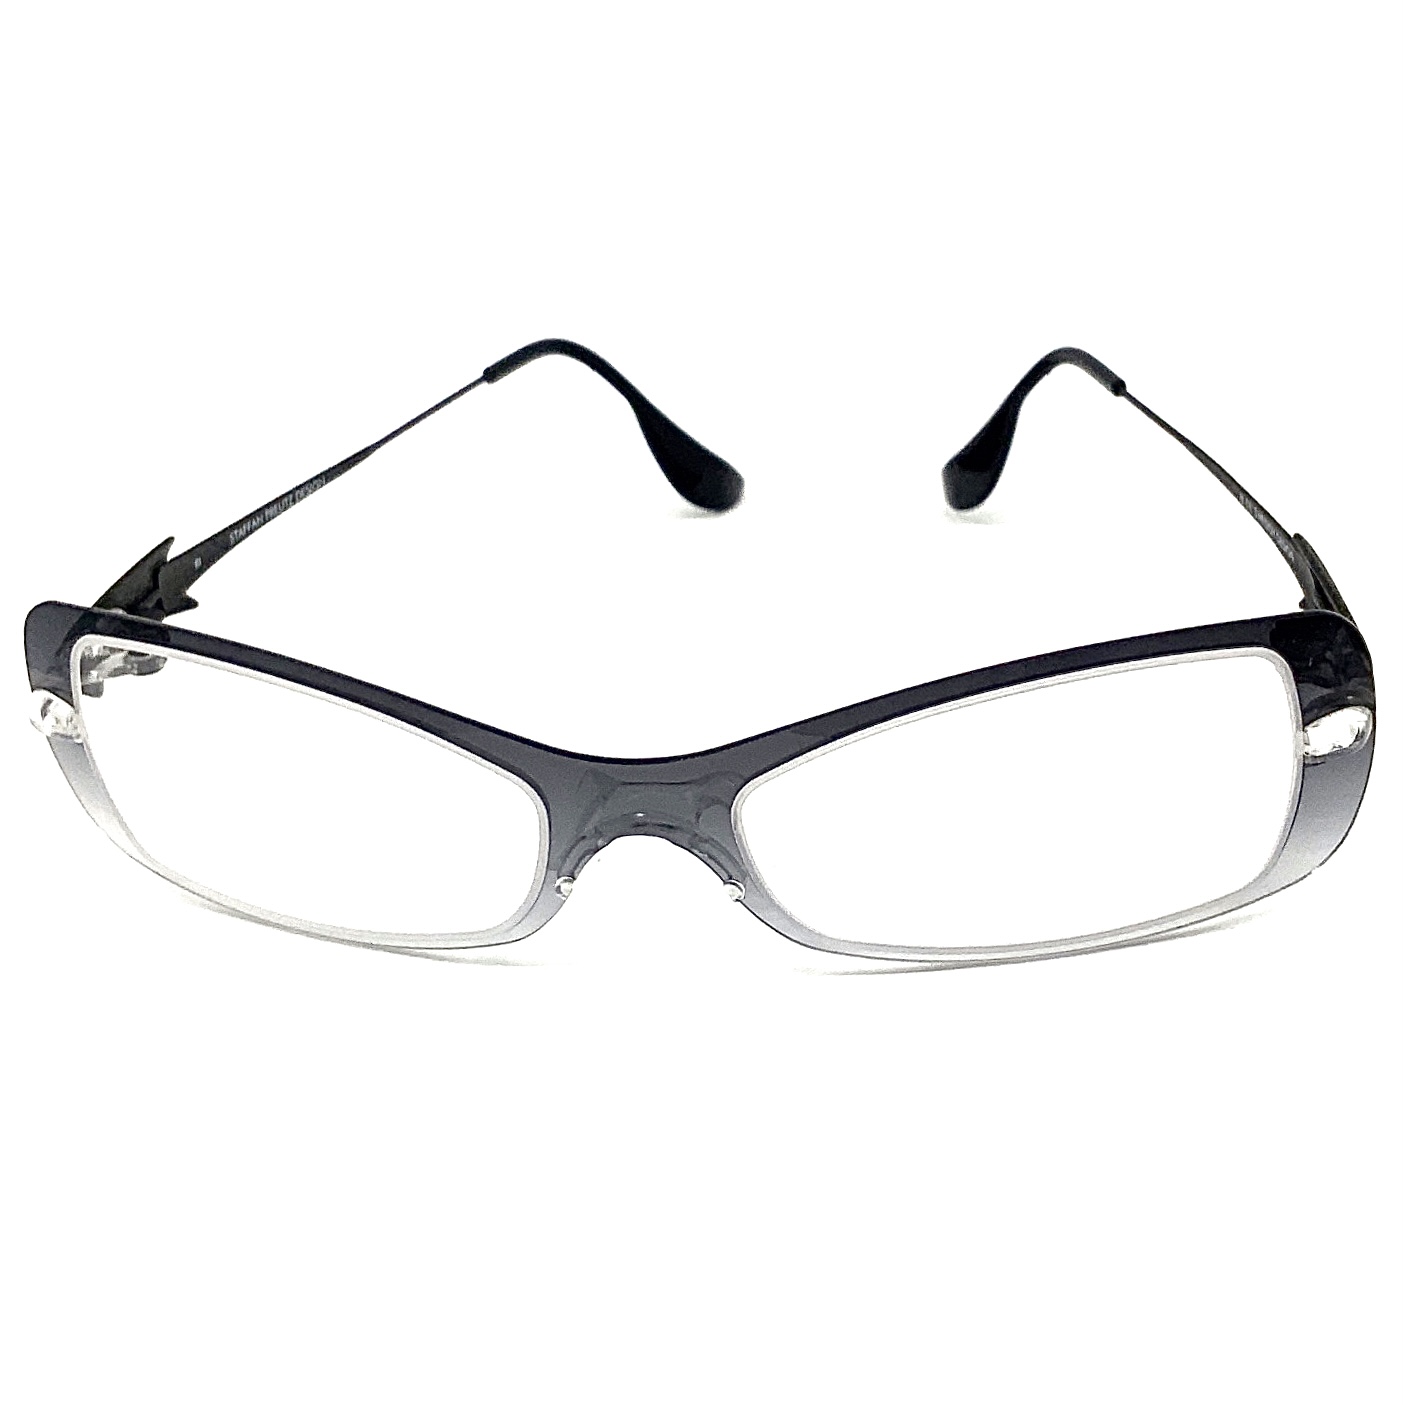 STAFFAN PREUTZ DESIGN 眼鏡 フレーム カーボン プロイツご検討よろしくお願い致します